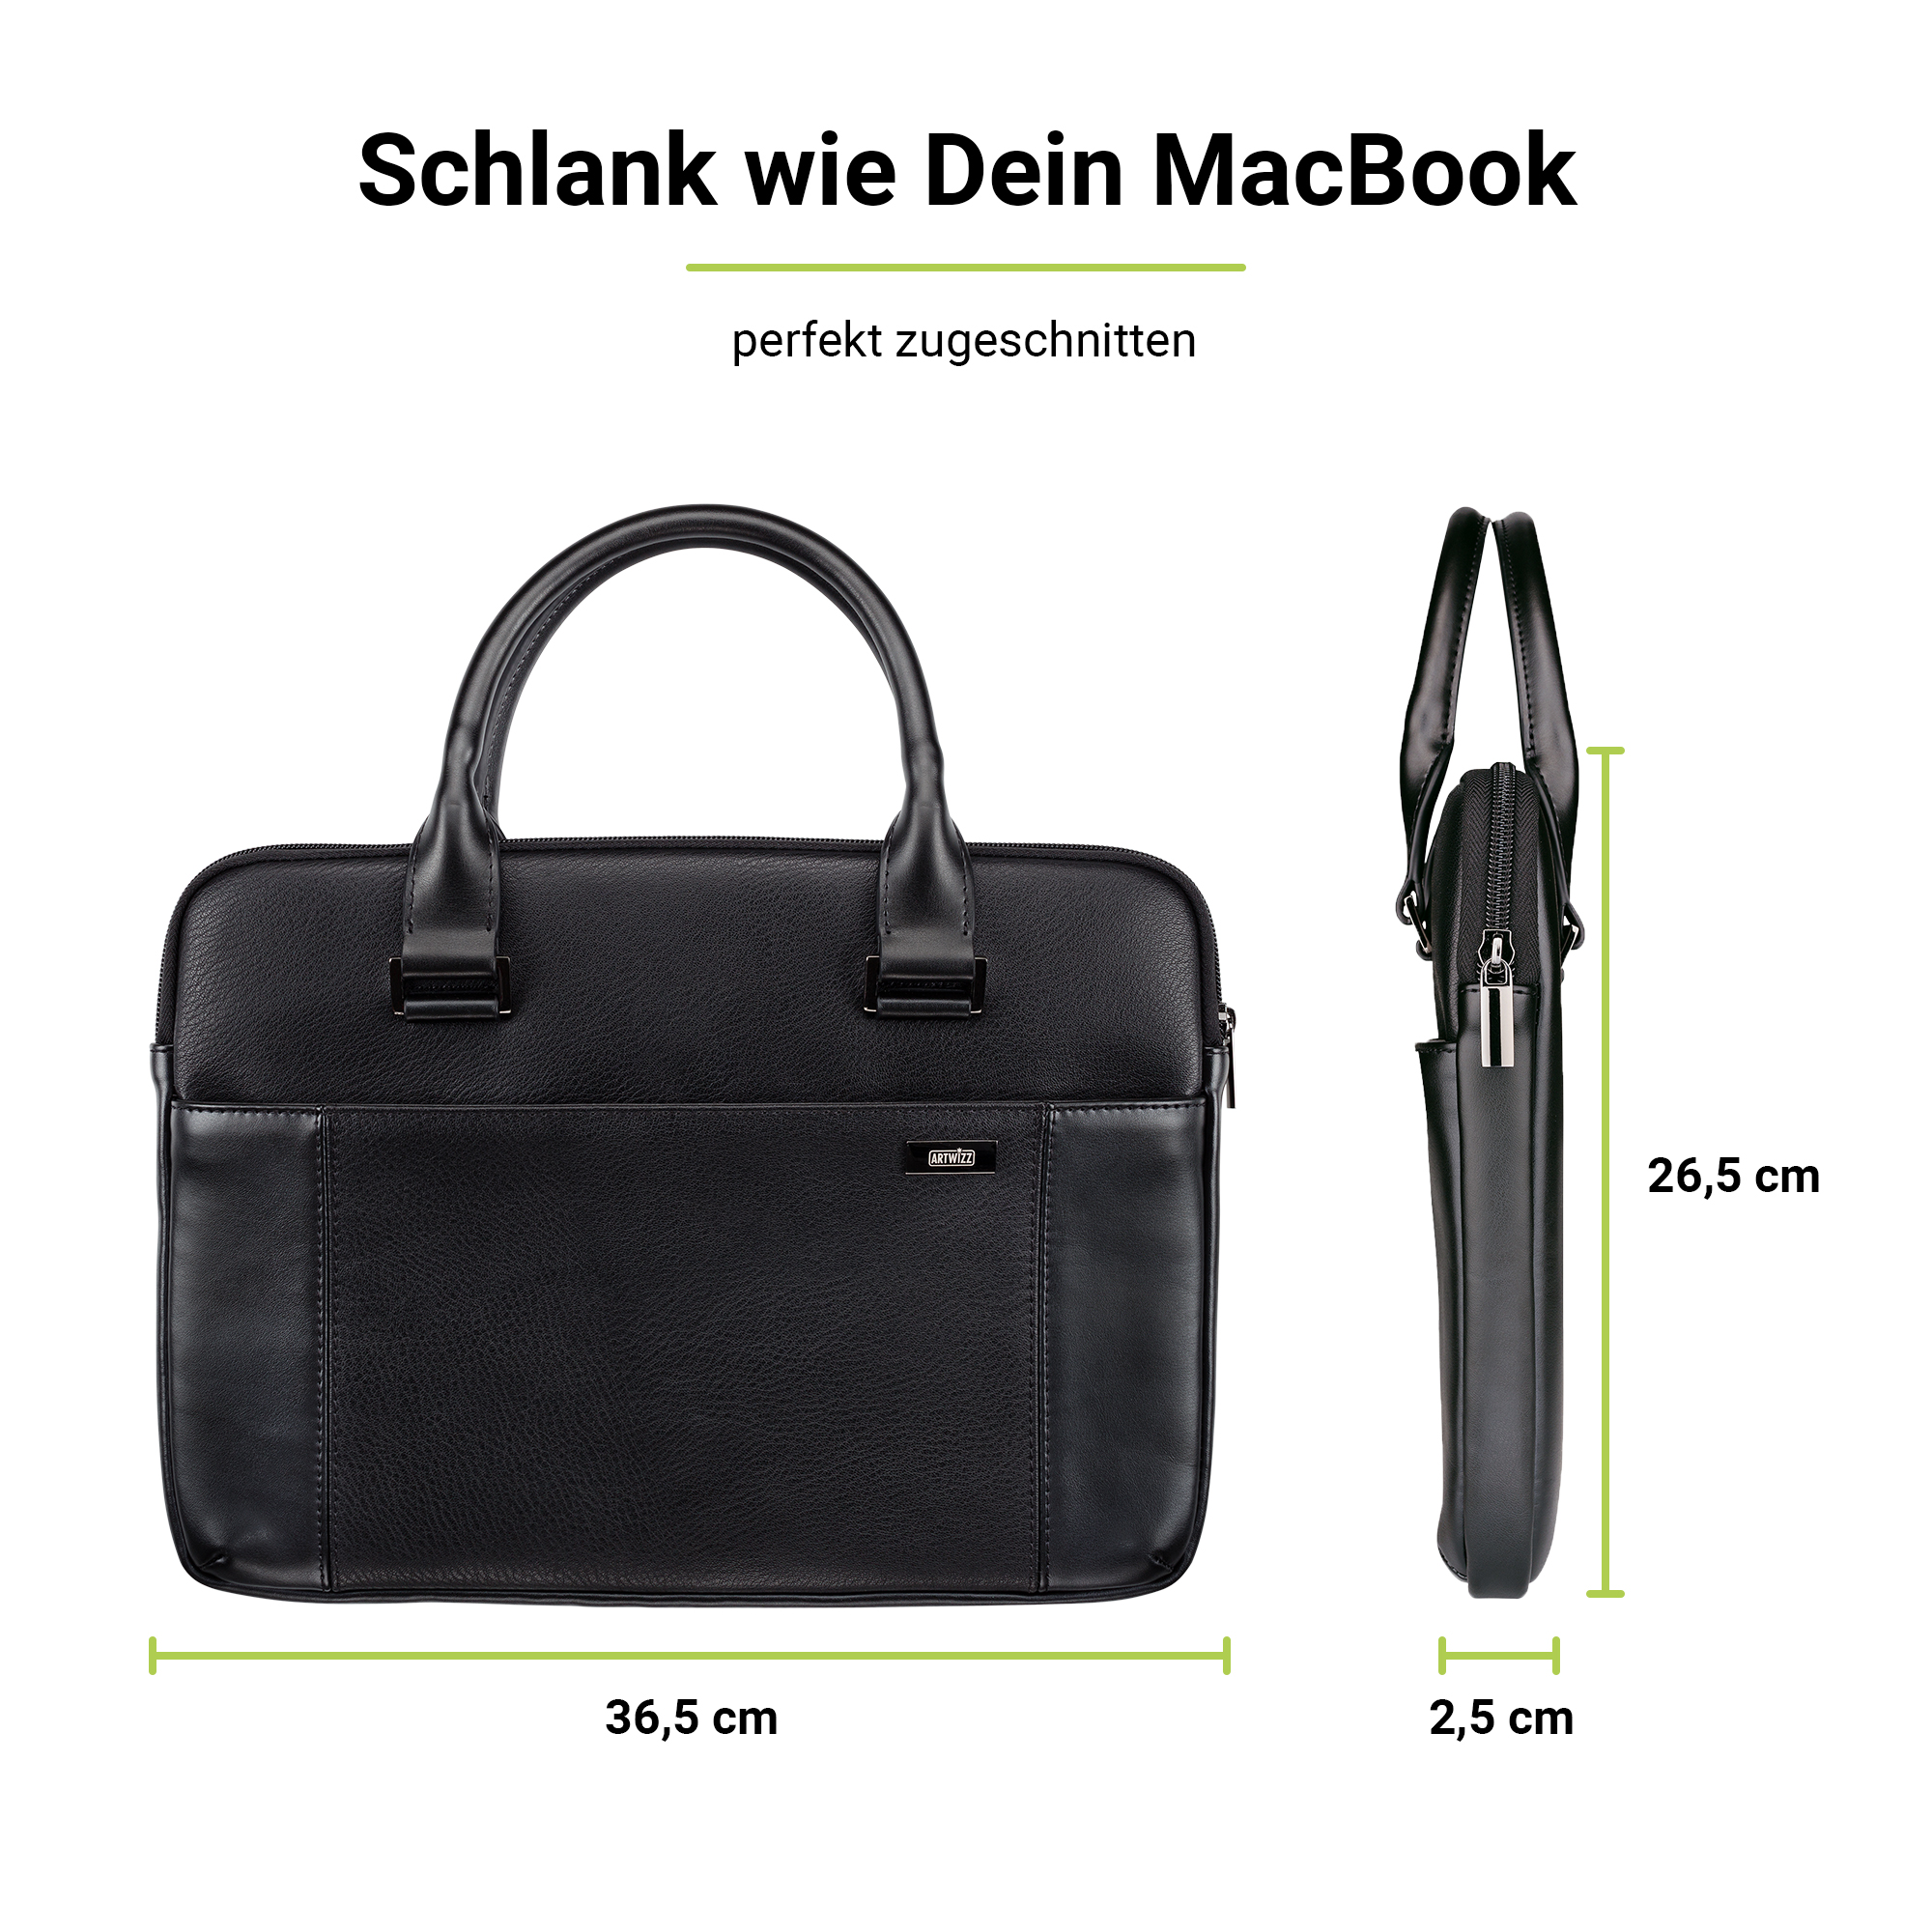 ARTWIZZ Leather Bag für für 15 Schwarz Notebook Tasche Leder, Apple 16 Aktentasche / Zoll